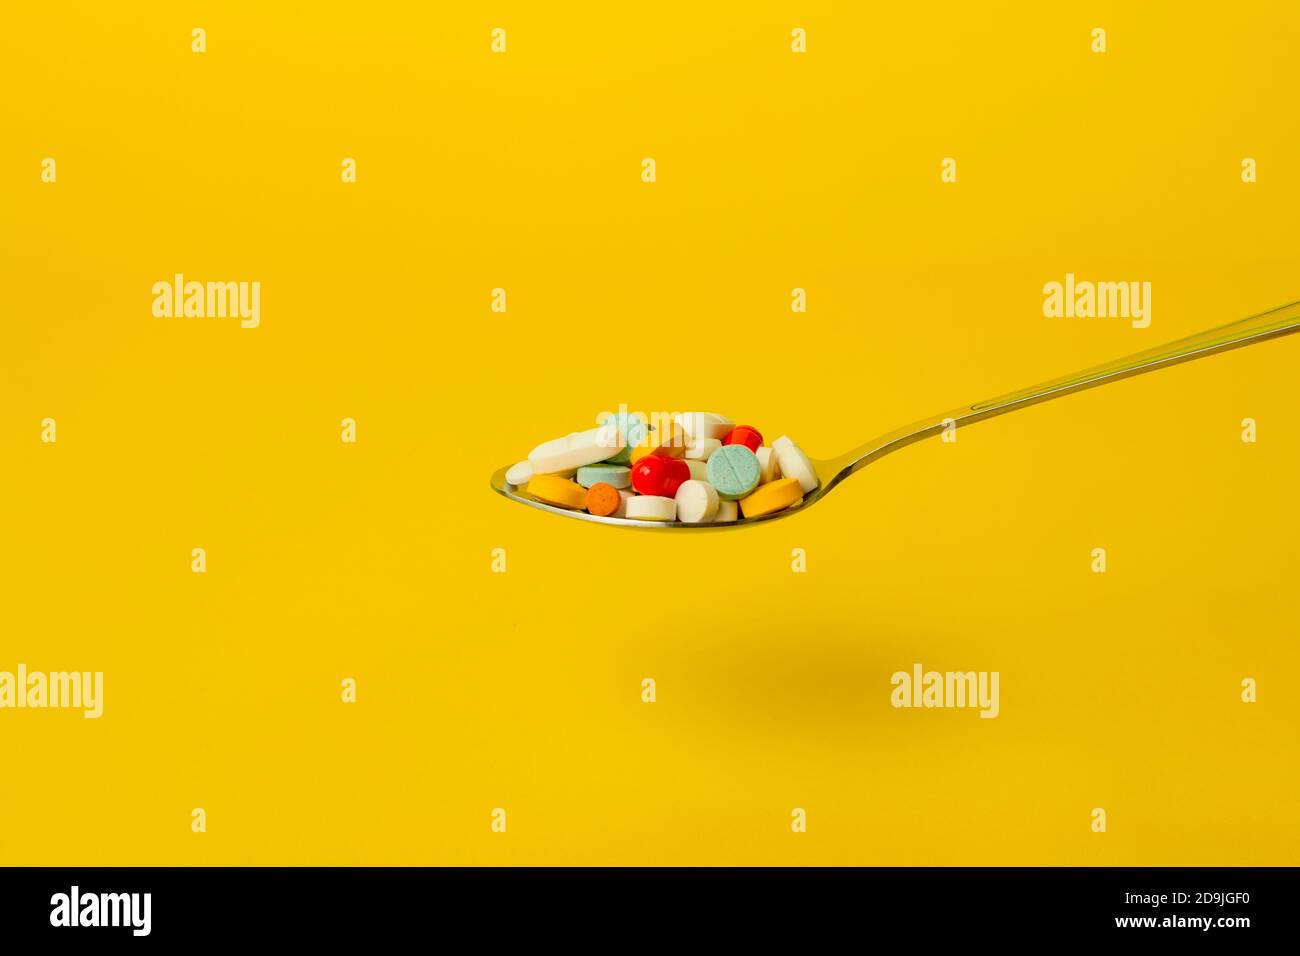 Löffel voller Pillen auf gelbem Hintergrund. Selbstmedikation und Drogenmissbrauch Konzept. Stockfoto